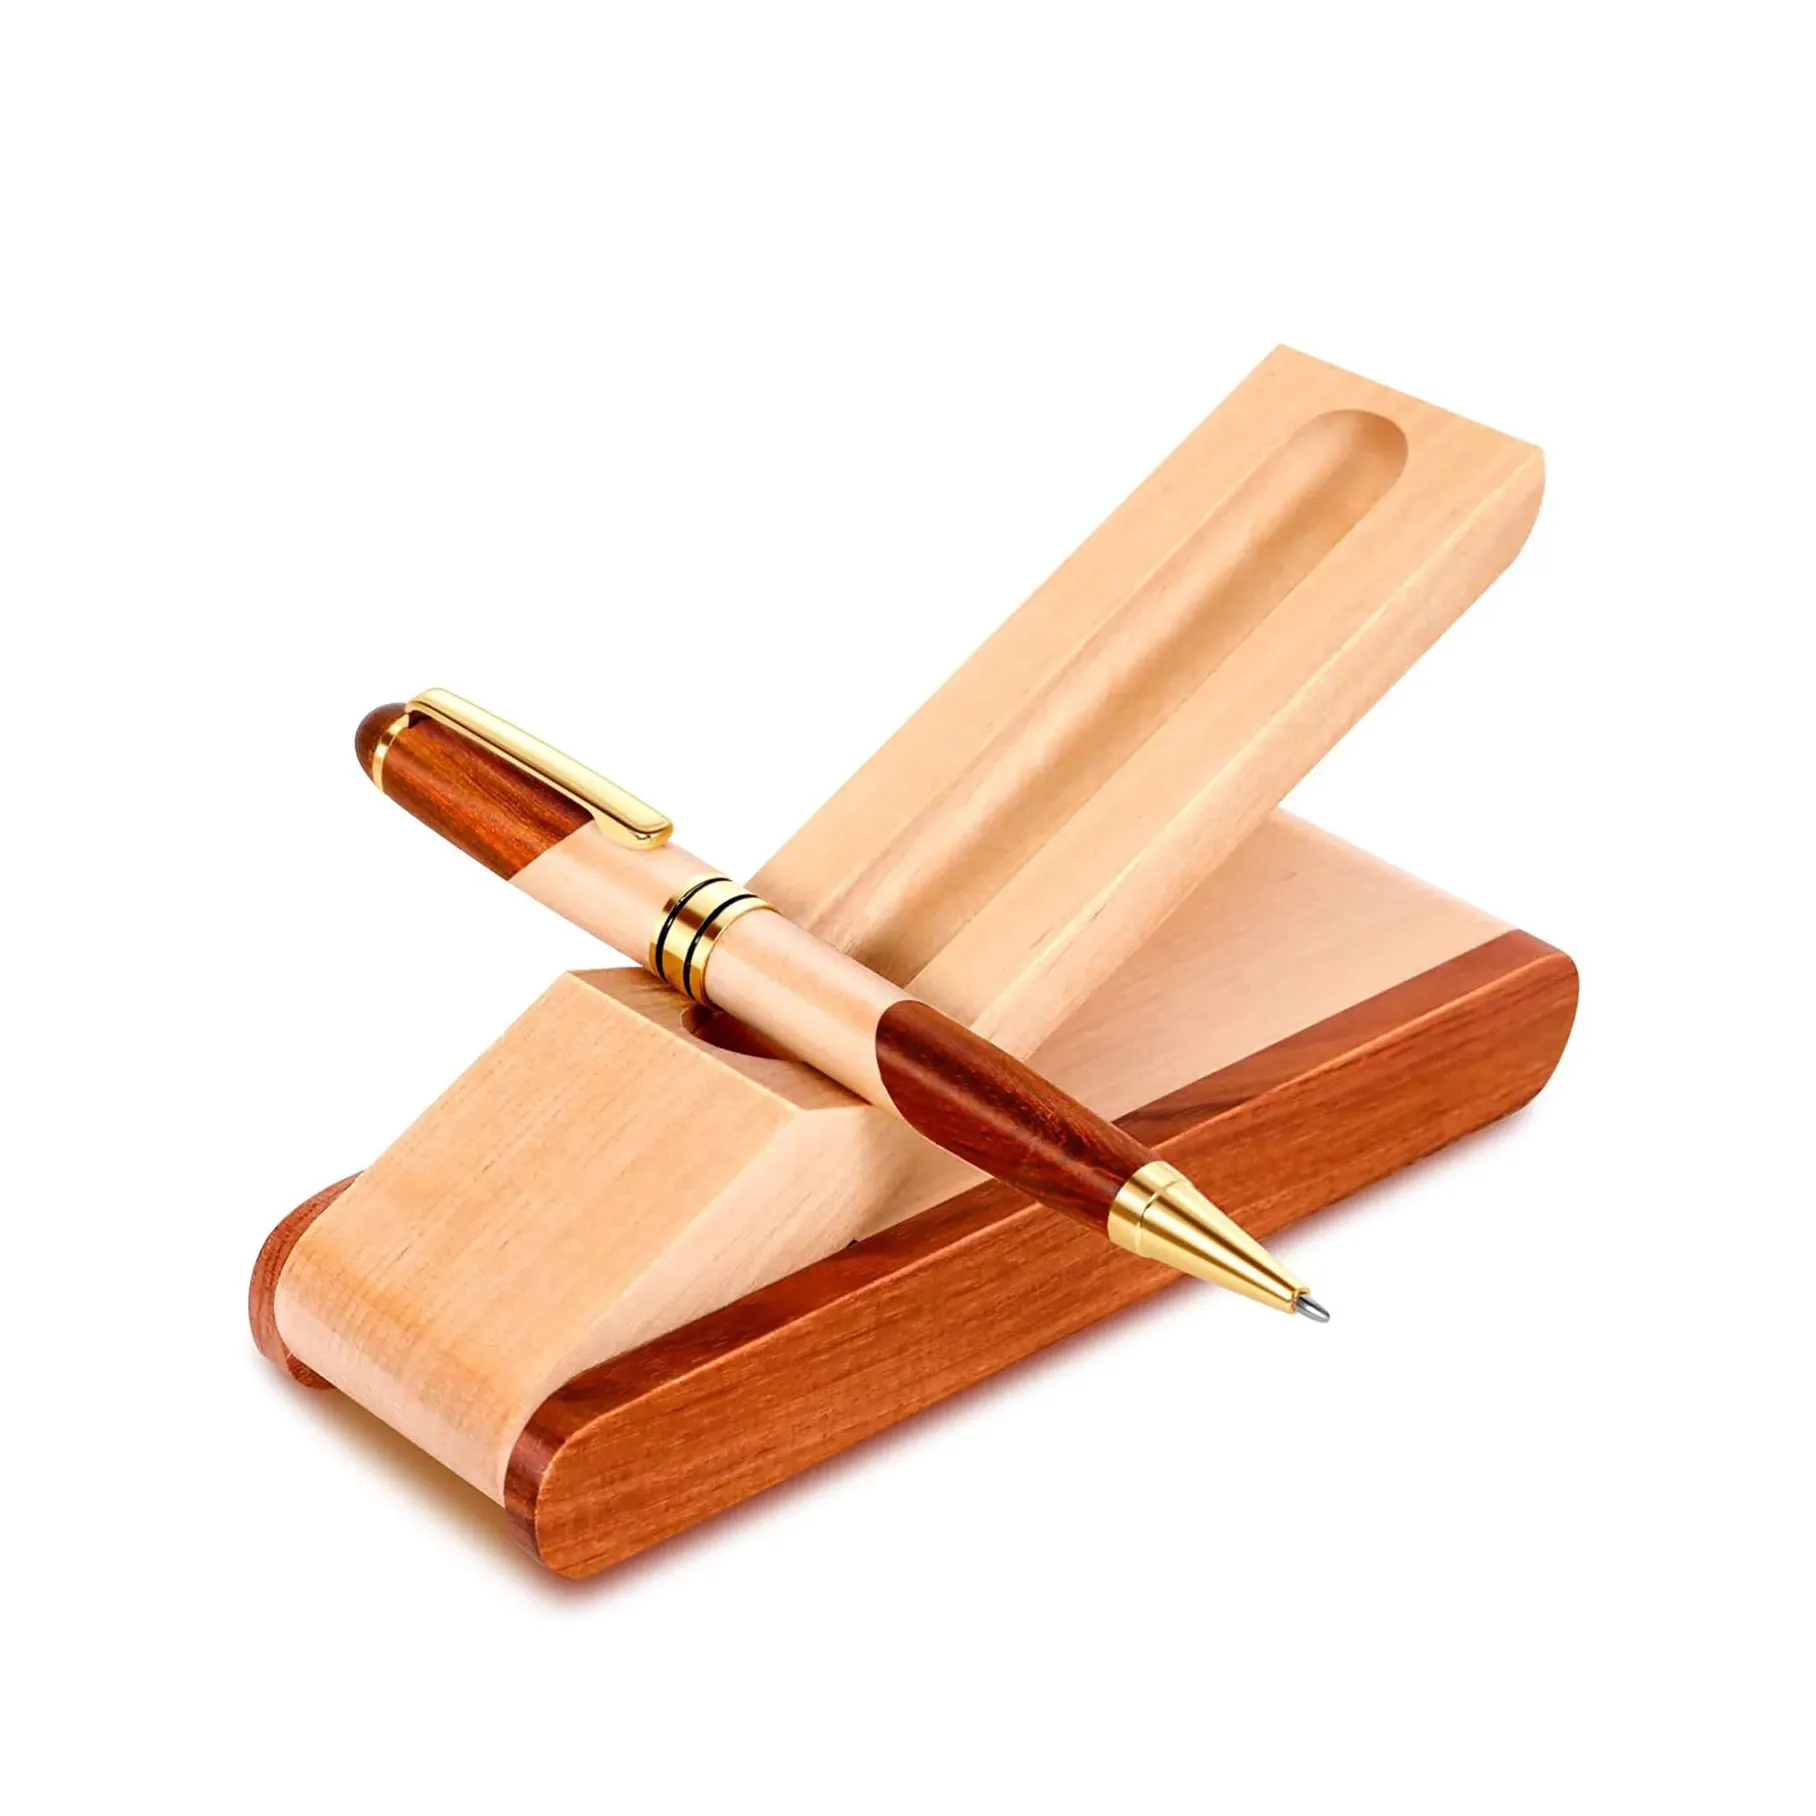 Luxus Holz Kugelschreiber Box Geschenk verpackung Falten mehrfarbige Holzkiste umwelt freundliche Stift Set